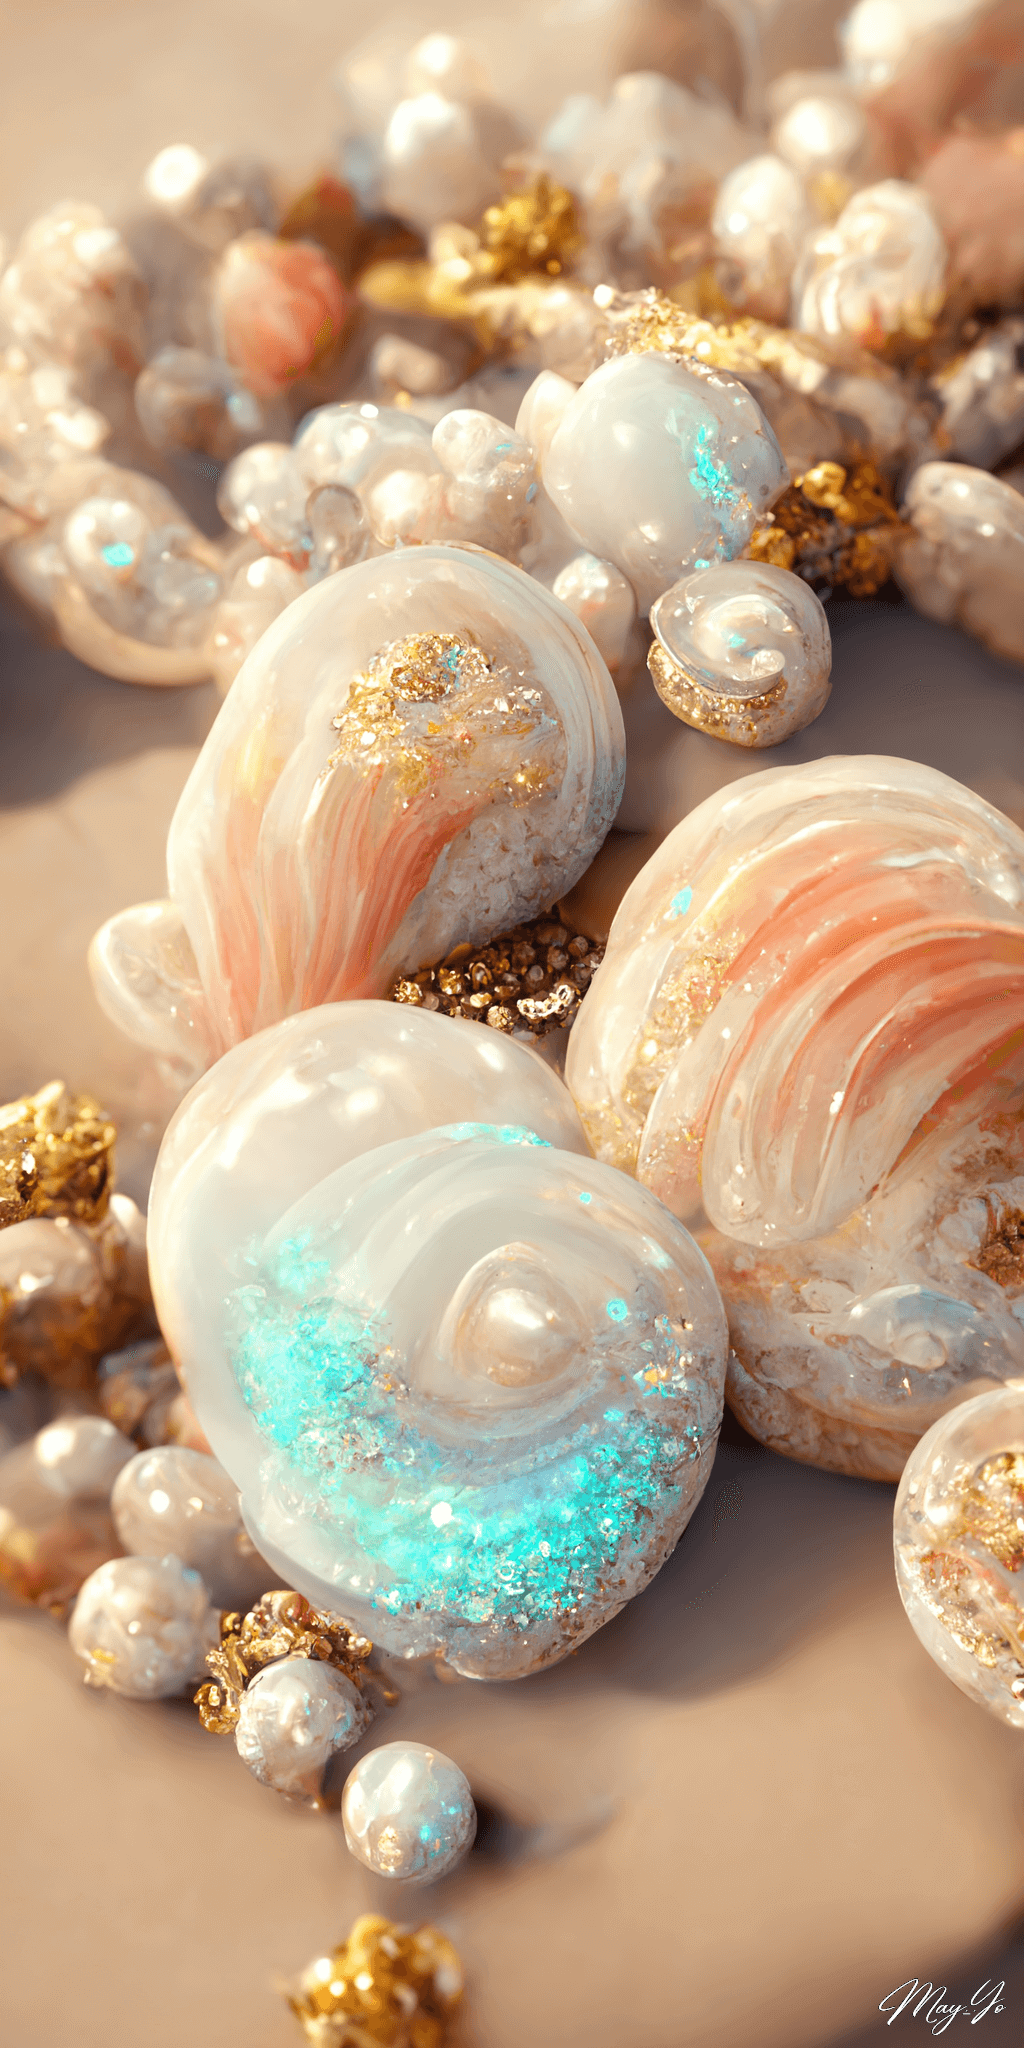 砂浜に打ち上げられた人魚の宝物をイメージしたジュエリーのイラスト 輝く貝殻の宝石の壁紙 ゴールドをあしらったジュエリー イラスト AIイラスト待受 縦長画像 seaside mermaid jewerly illustration gold and shell pearl luxery